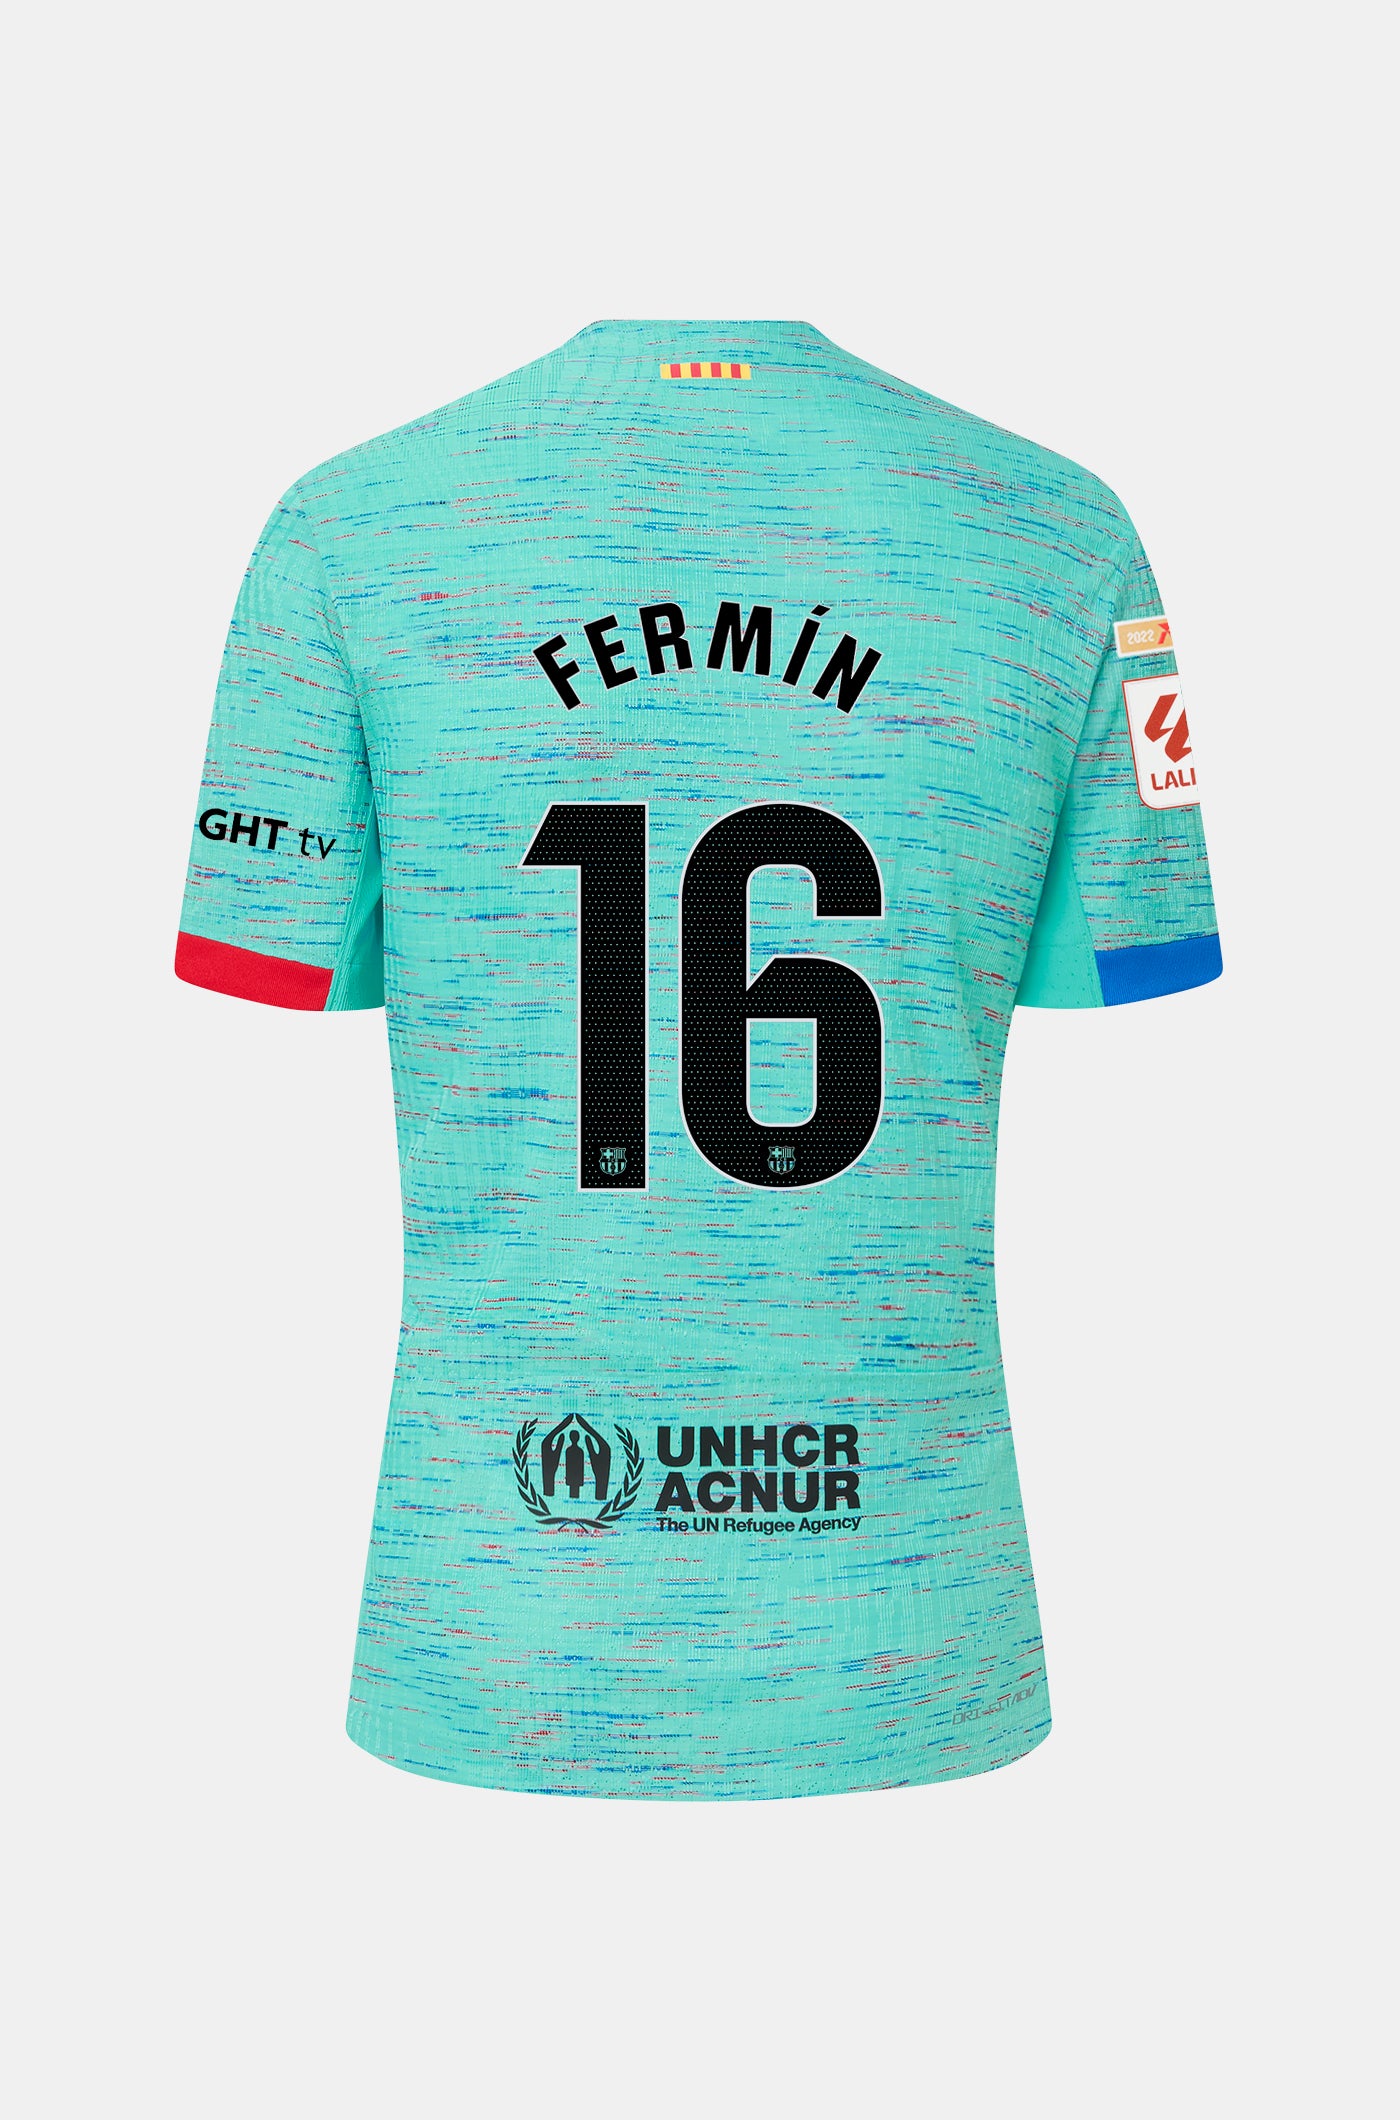 LFP FC Barcelona third shirt 23/24 Player’s Edition  - FERMÍN